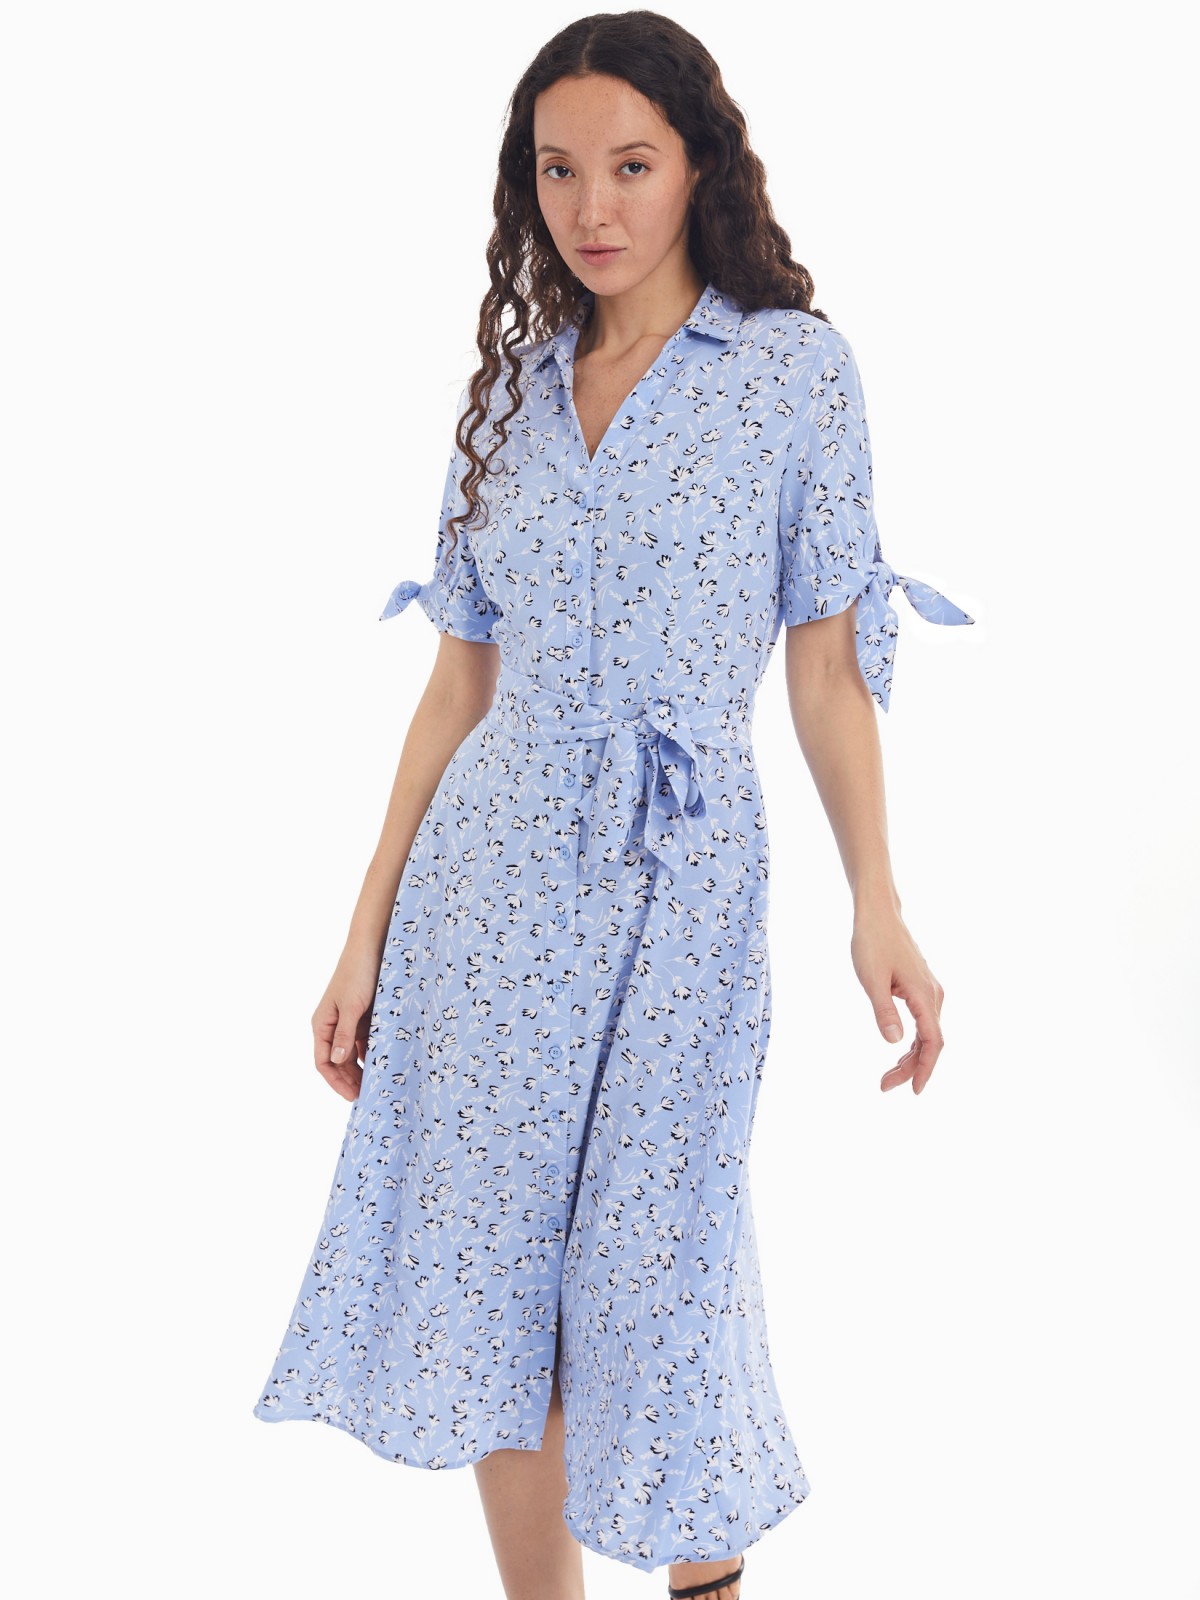 Платье-рубашка с поясом и акцентными короткими рукавами zolla 024138240412, цвет светло-голубой, размер XS - фото 4